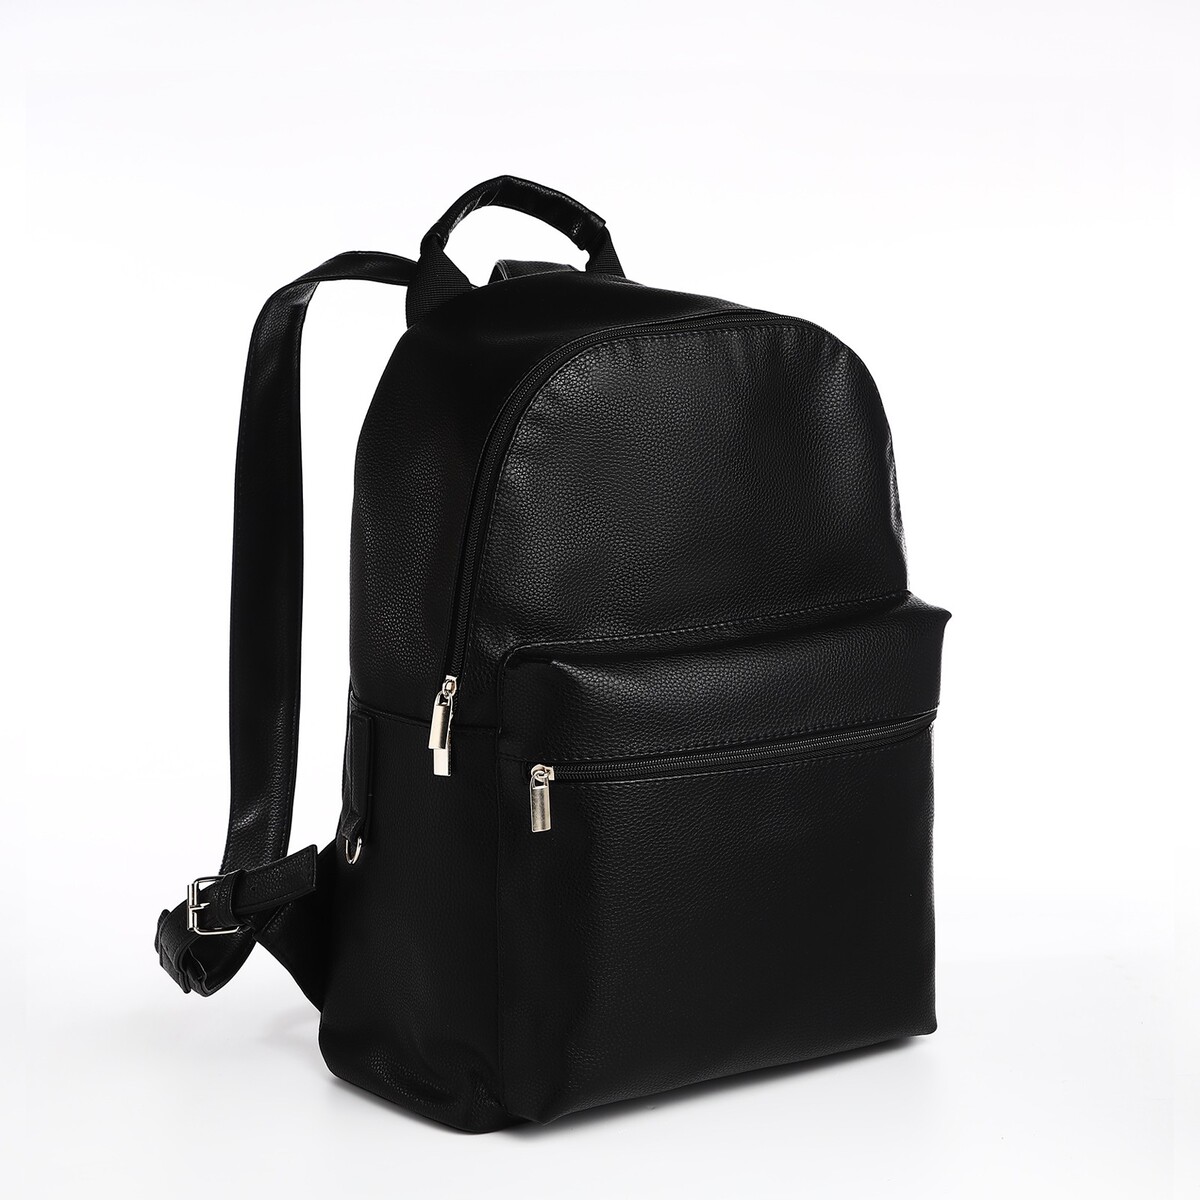 Рюкзак городской textura из искусственной кожи на молнии, наружный карман, цвет черный рюкзак городской textura